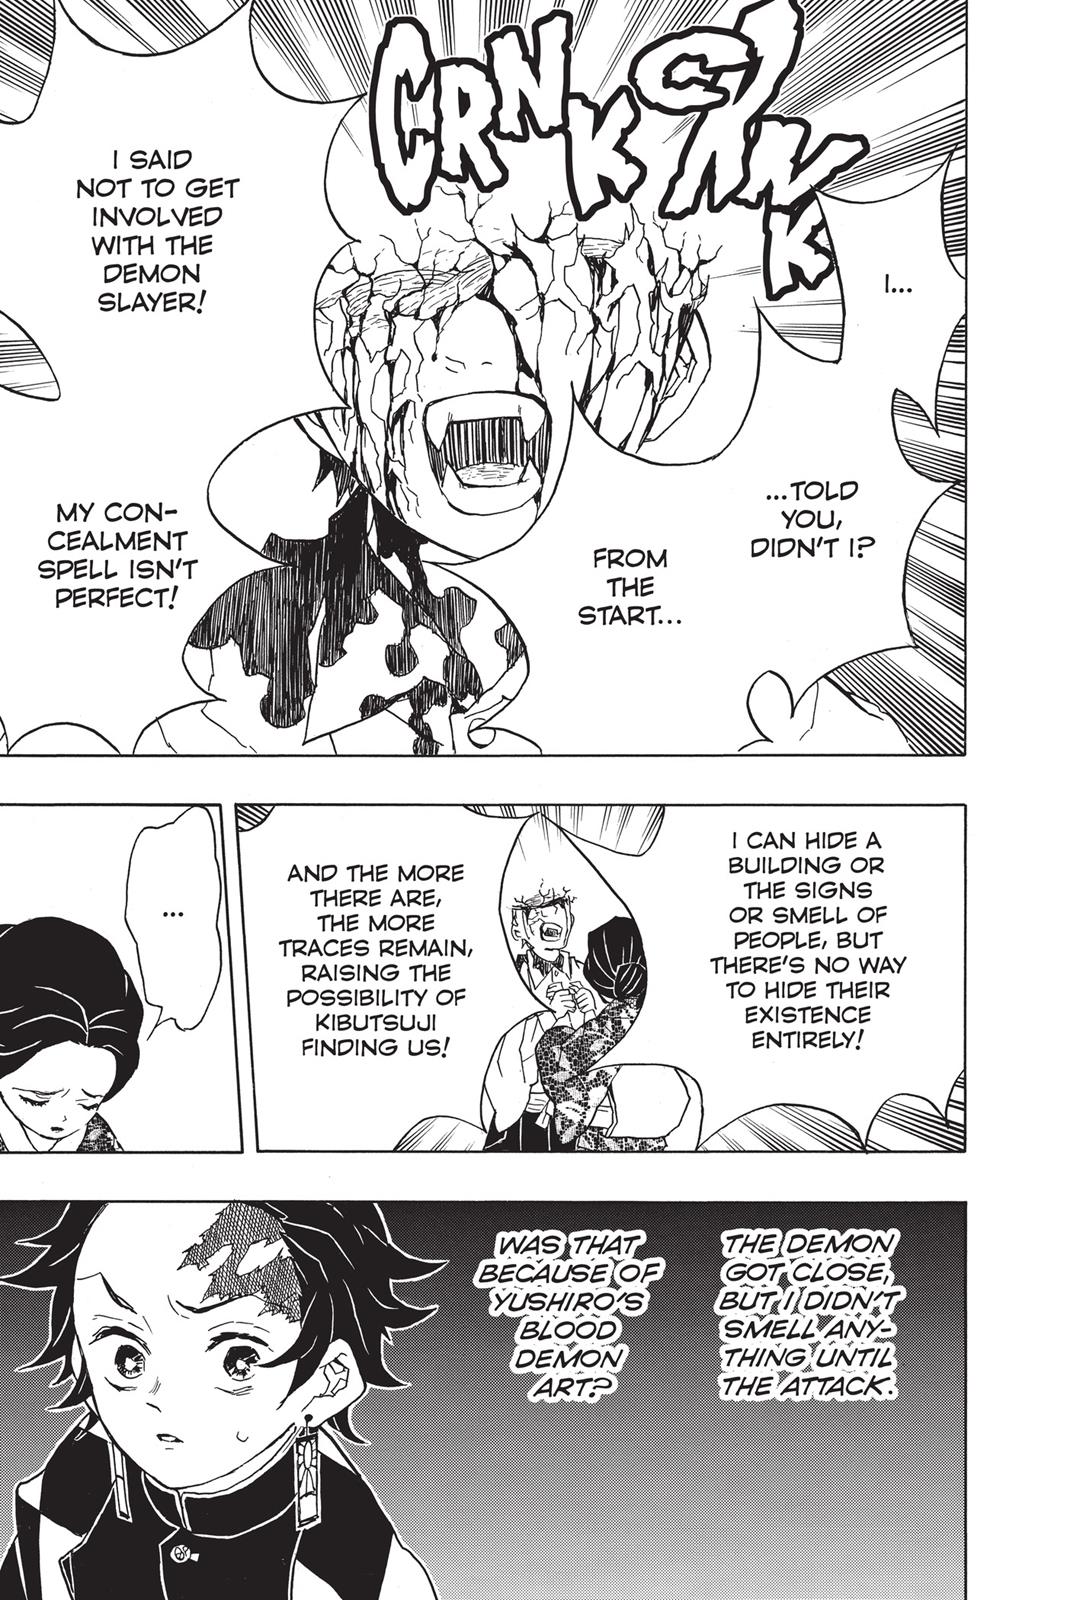 Demon Slayer Manga Manga Chapter - 16 - image 13